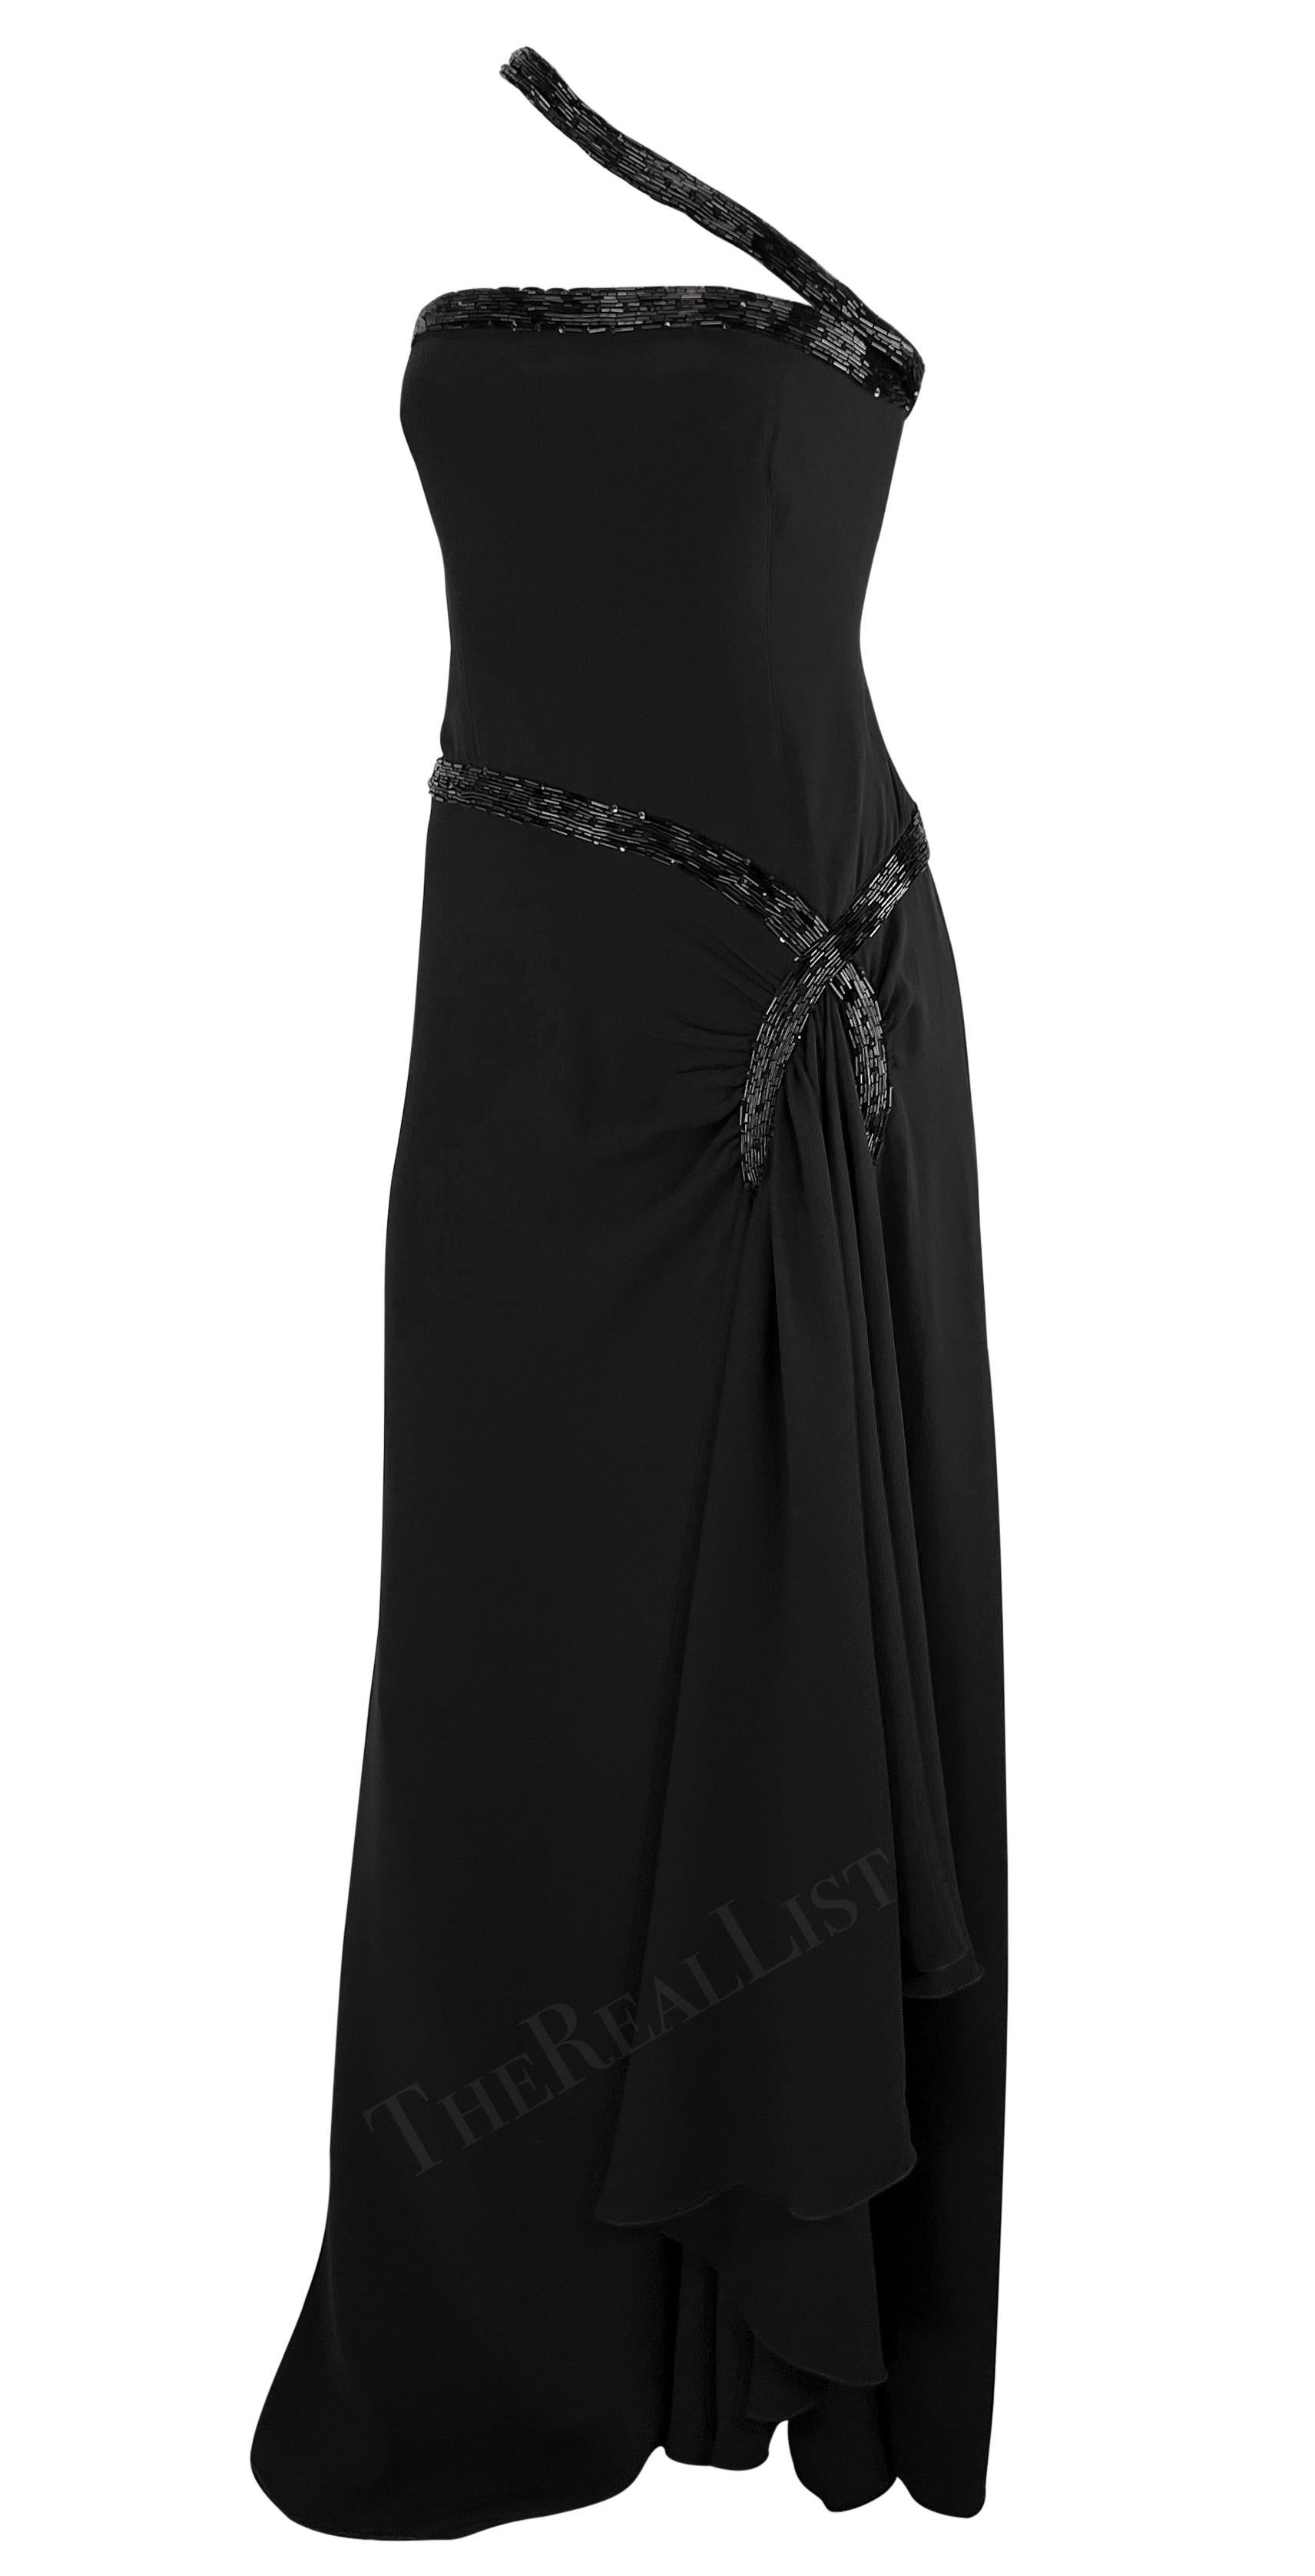 Voici une fabuleuse robe noire perlée, longue comme un plancher, conçue par Valentino Garavani au milieu des années 2000. Cette superbe robe est ornée de perles noires complexes, ce qui ajoute à son allure. Les perles embellissent élégamment la